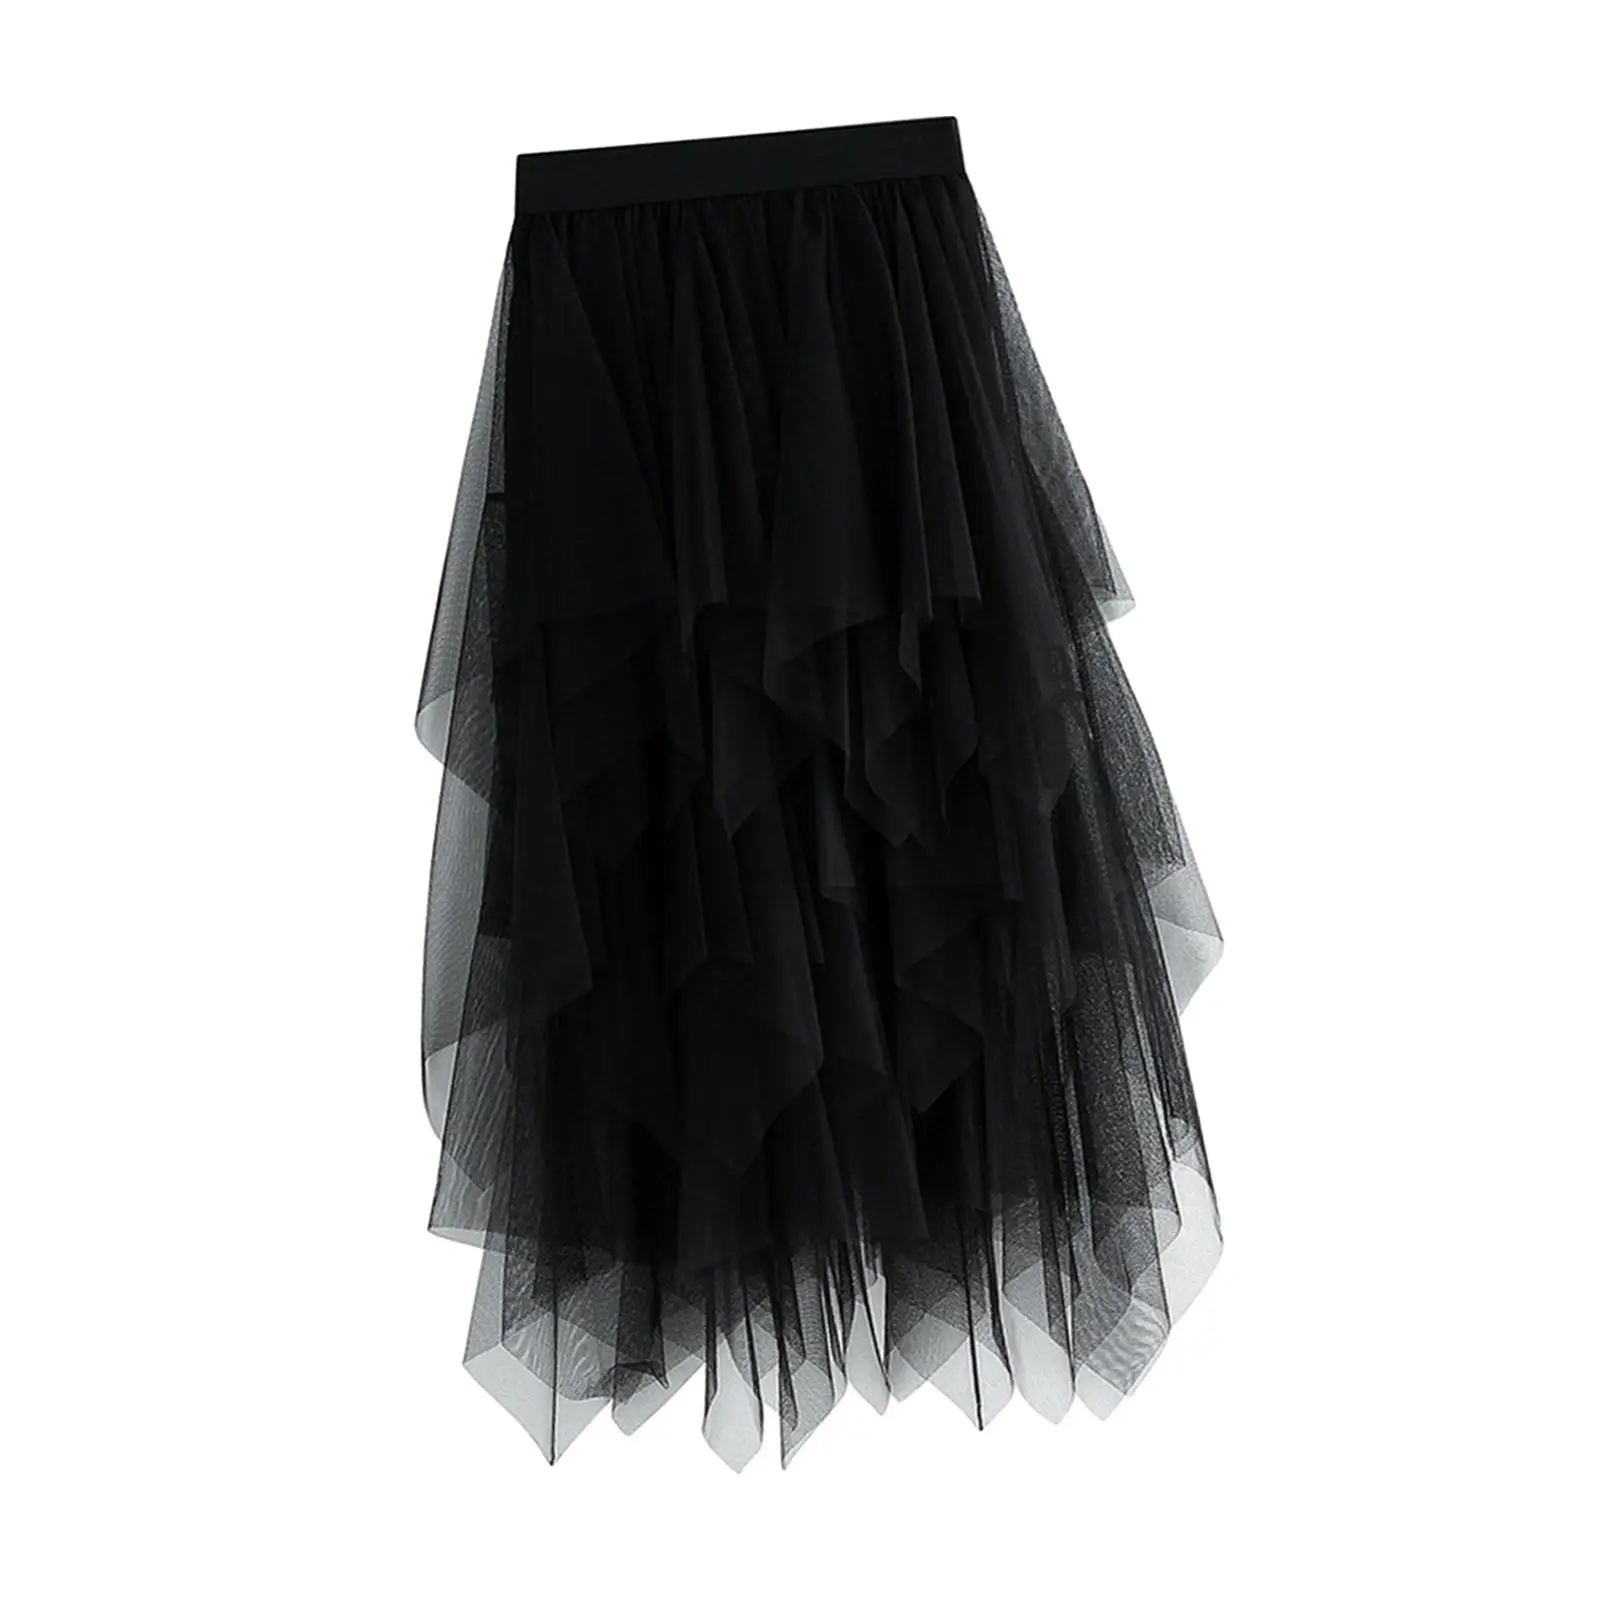 Women`s Tulle Skirt Asymmetrical Midi Skirt A Line Half Skirt Layered Skirt for Wedding Formal Prom Evening Party Dress up